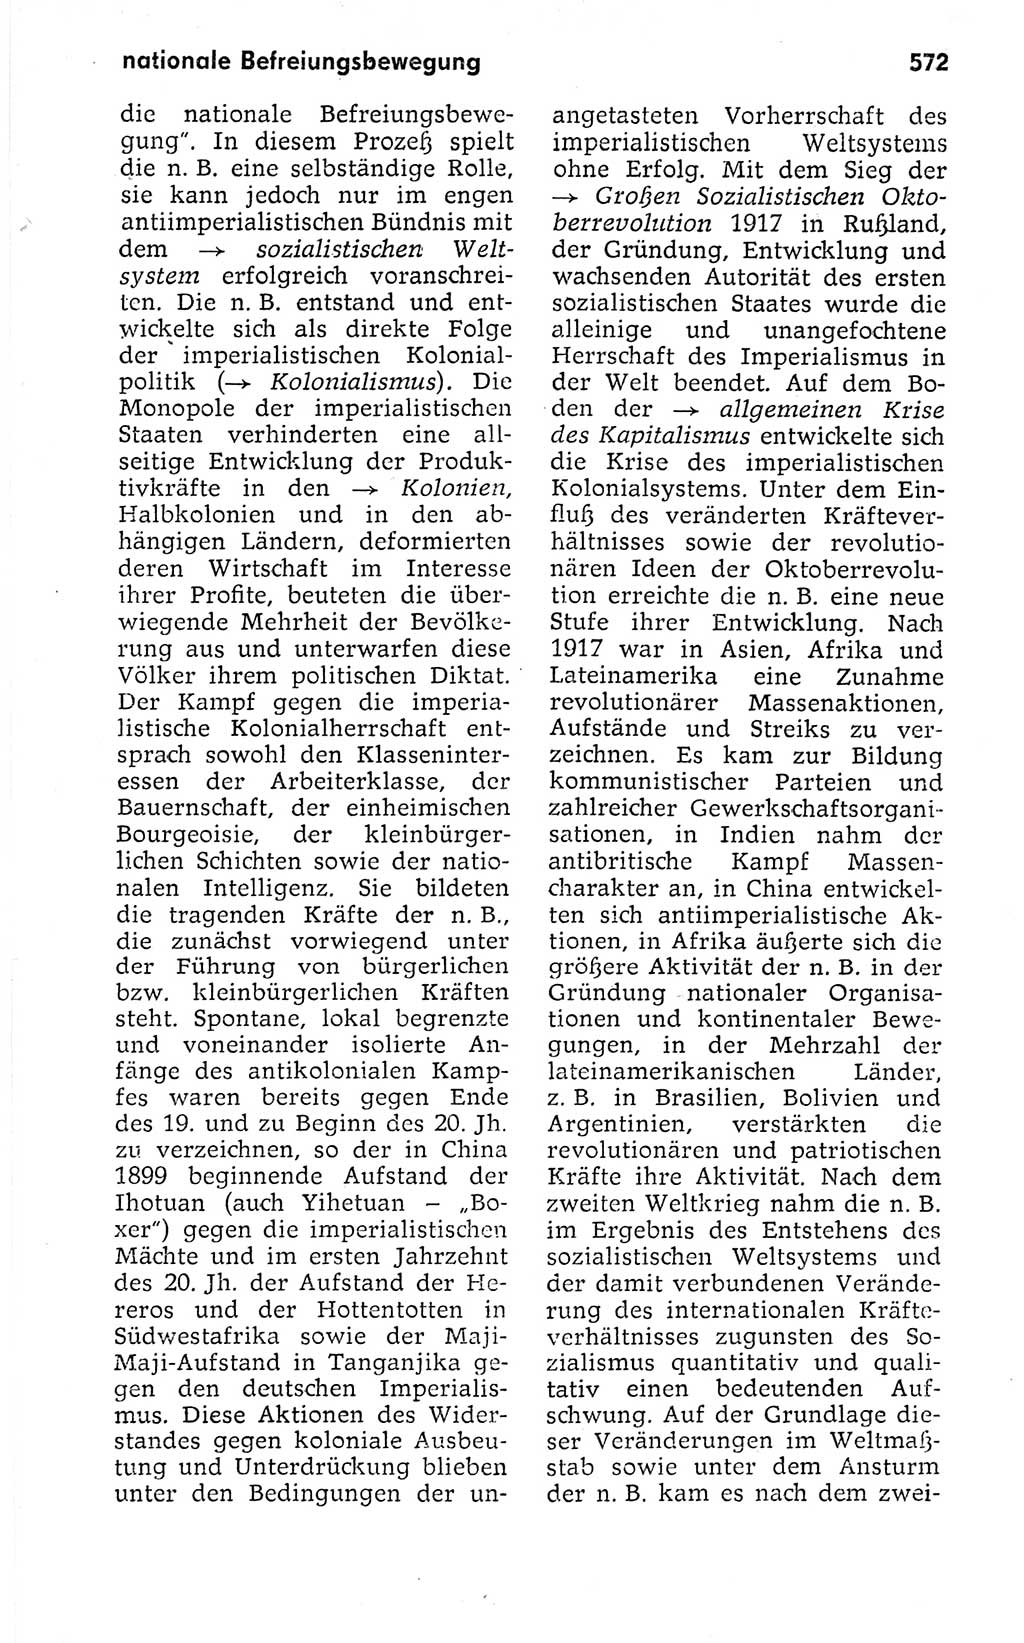 Kleines politisches Wörterbuch [Deutsche Demokratische Republik (DDR)] 1973, Seite 572 (Kl. pol. Wb. DDR 1973, S. 572)